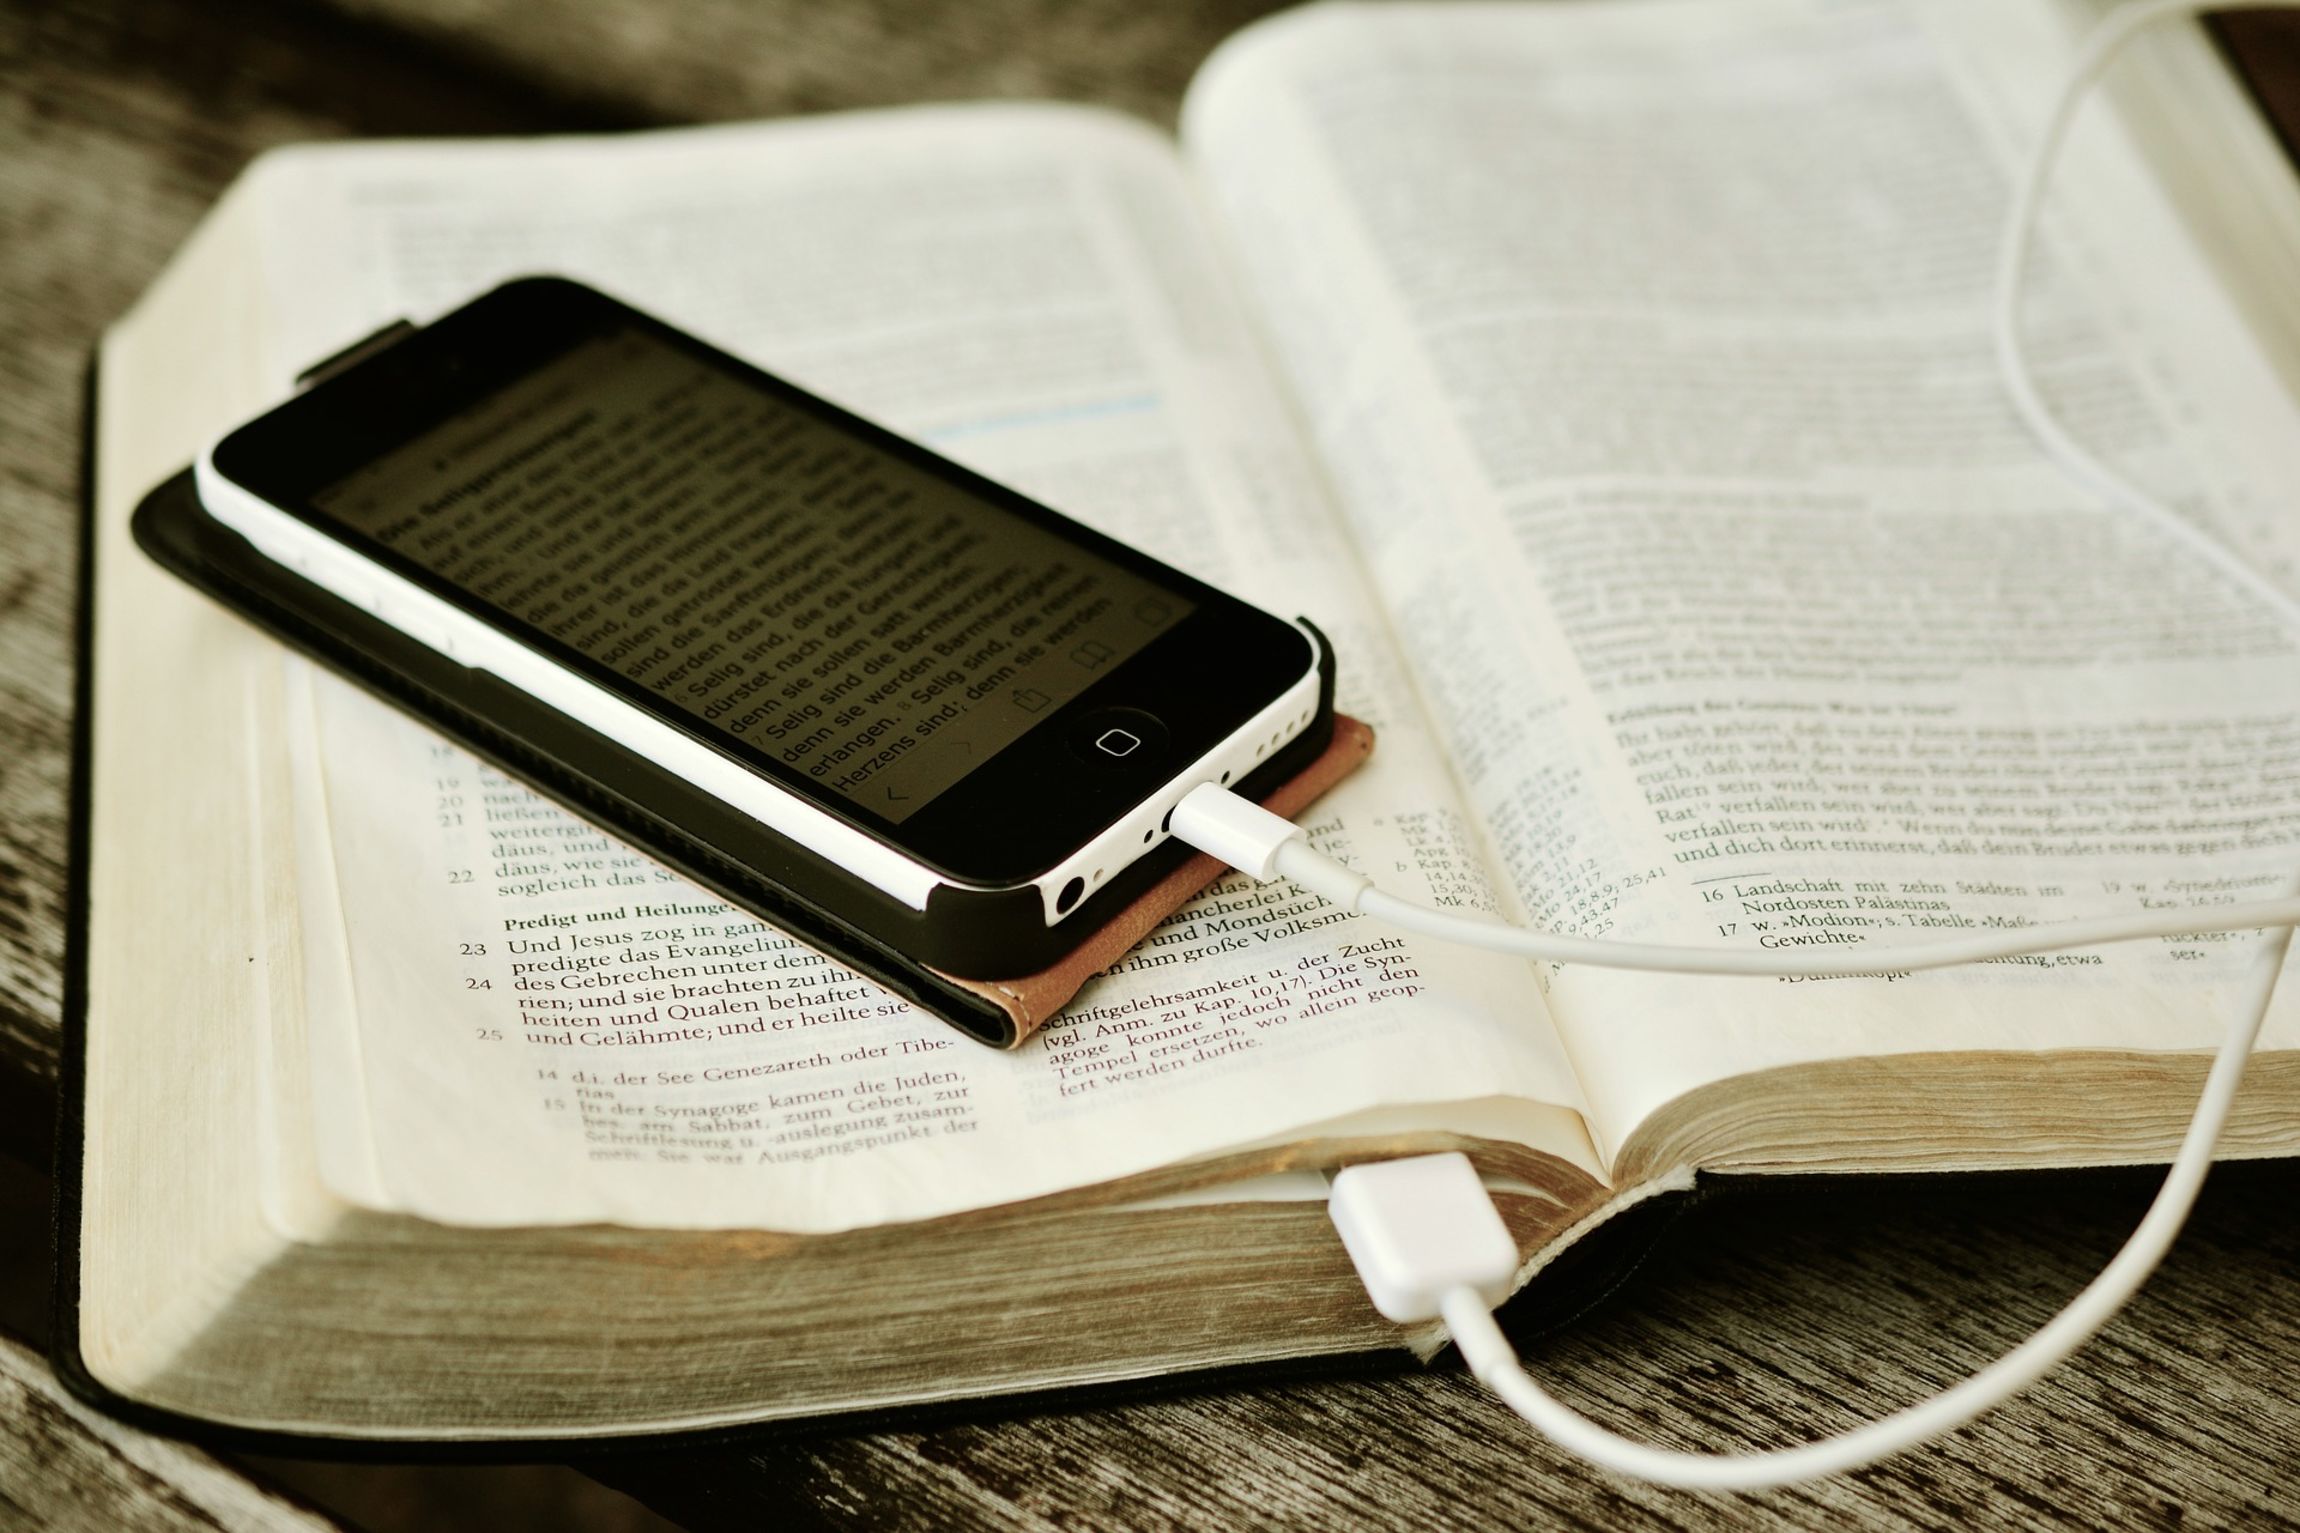 Isten online van – gyülekezet a digitális világban